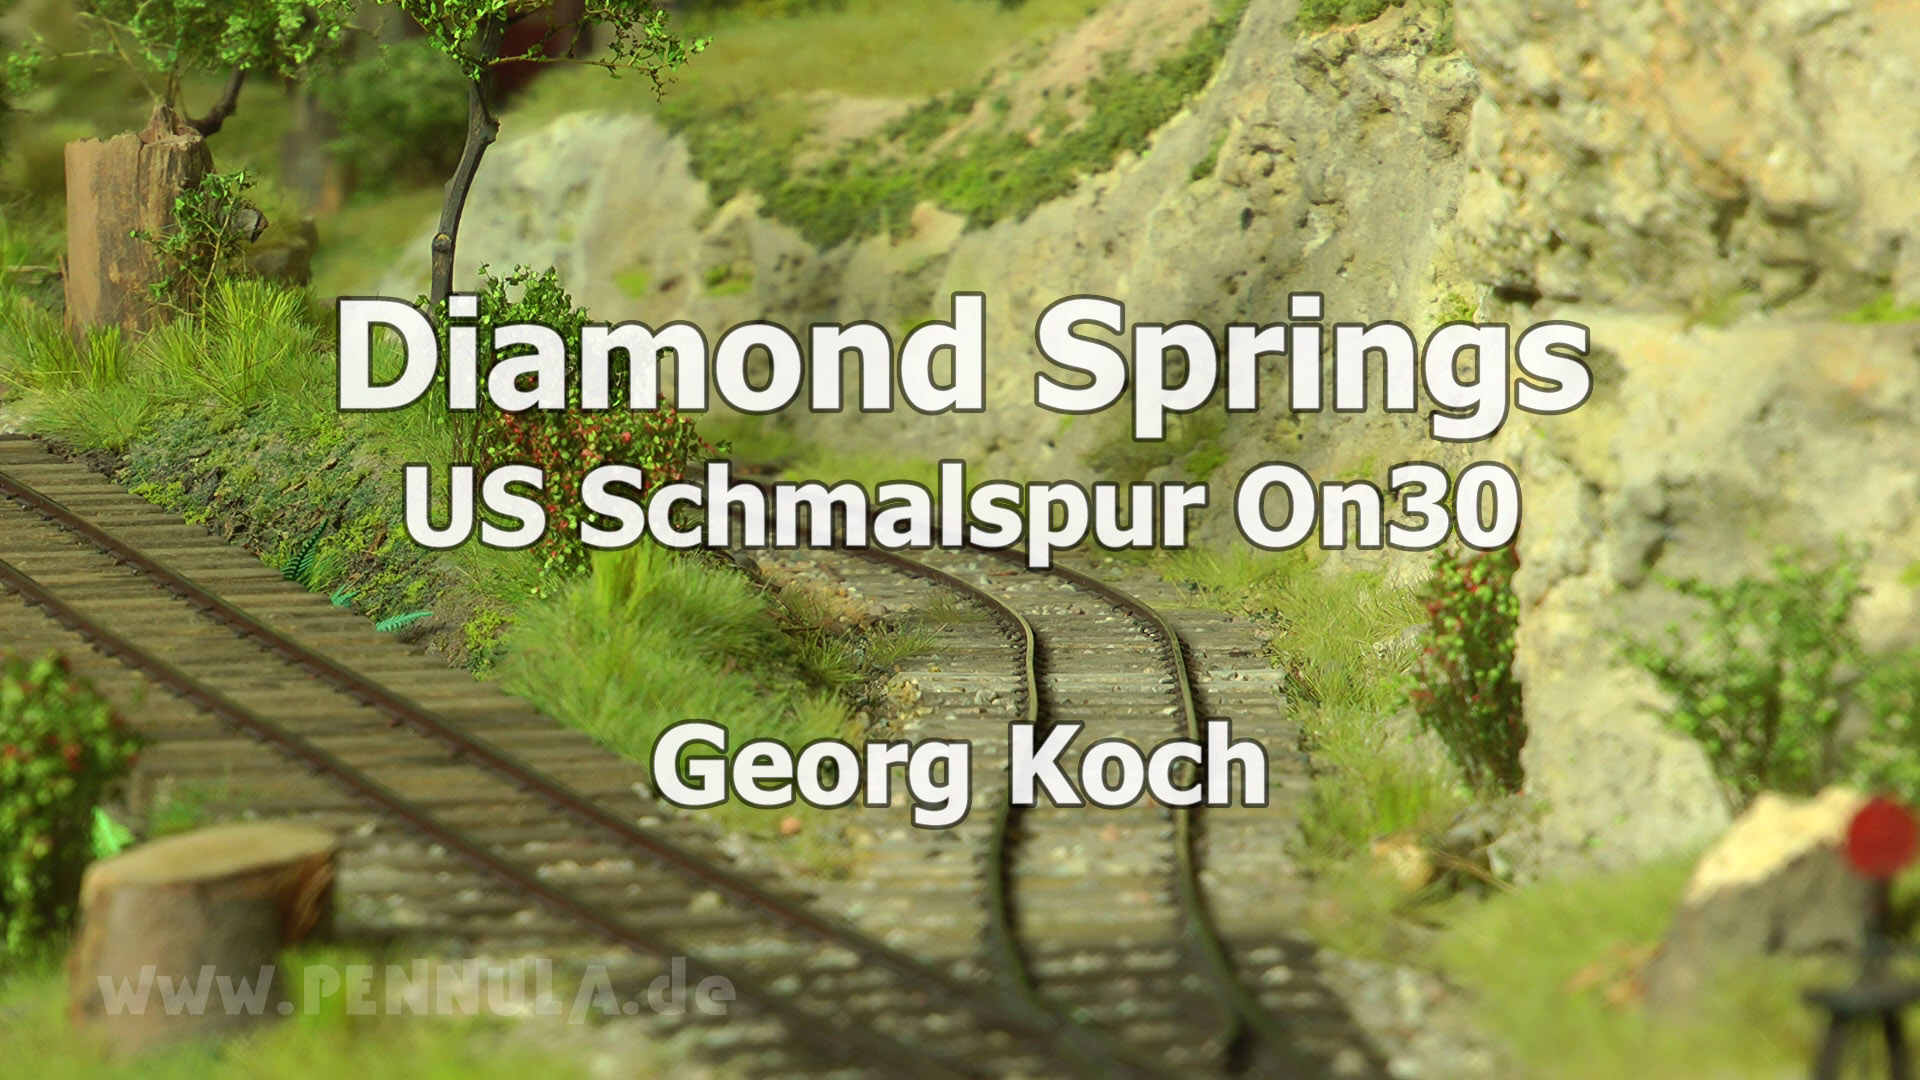 Modelleisenbahn Diamond Springs in US Schmalspur 0n30 von Georg Koch